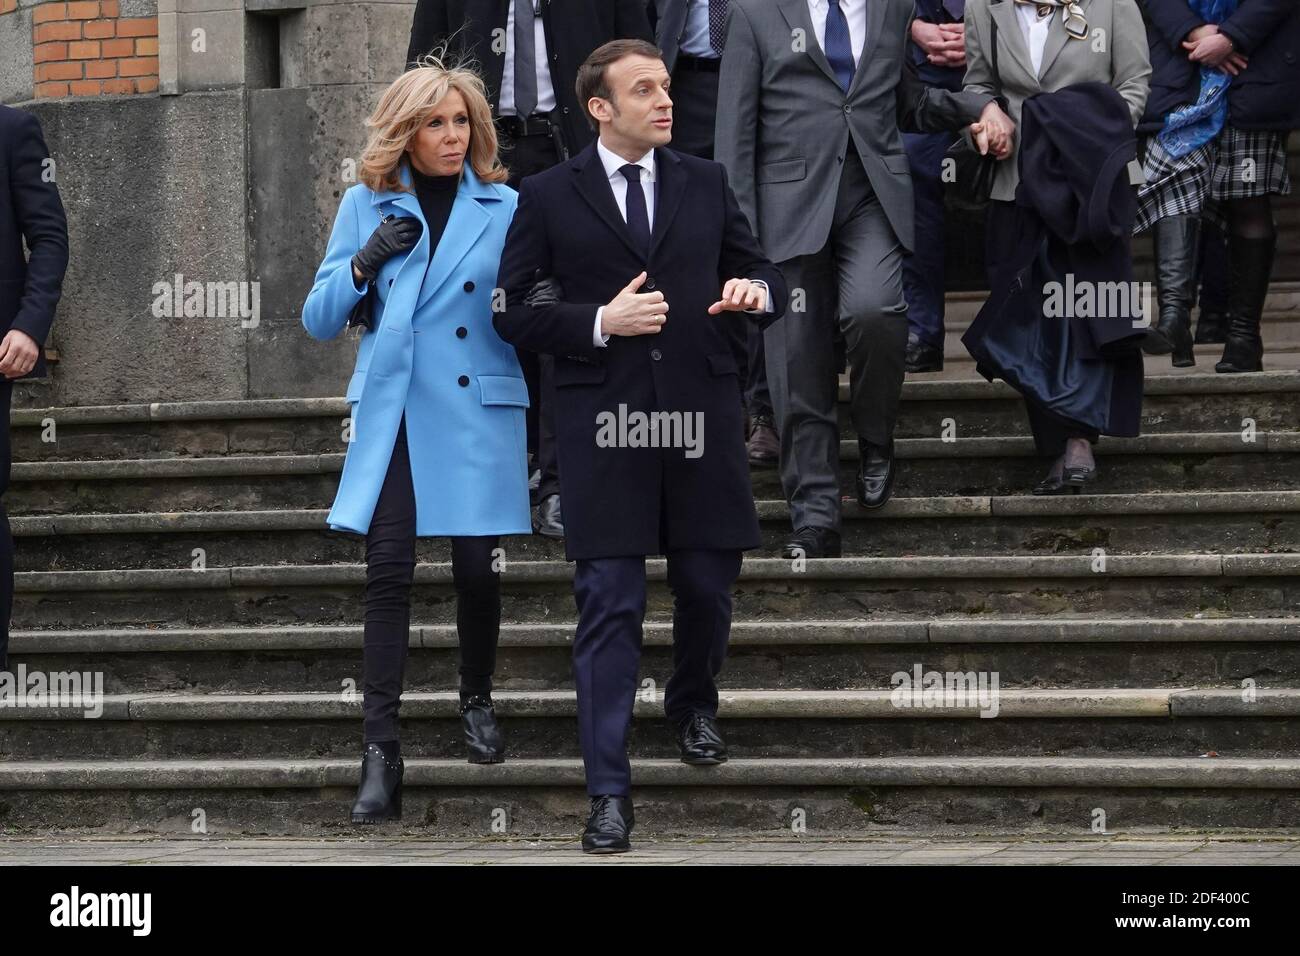 Il presidente francese Emmanuel Macron e sua moglie Brigitte Macron lasciano le loro case per uscire e votare durante il primo turno delle elezioni comunali a le Touquet, in Francia, il 15 marzo 2020. Foto di Francis Petit/ABACAPRESS.COM Foto Stock